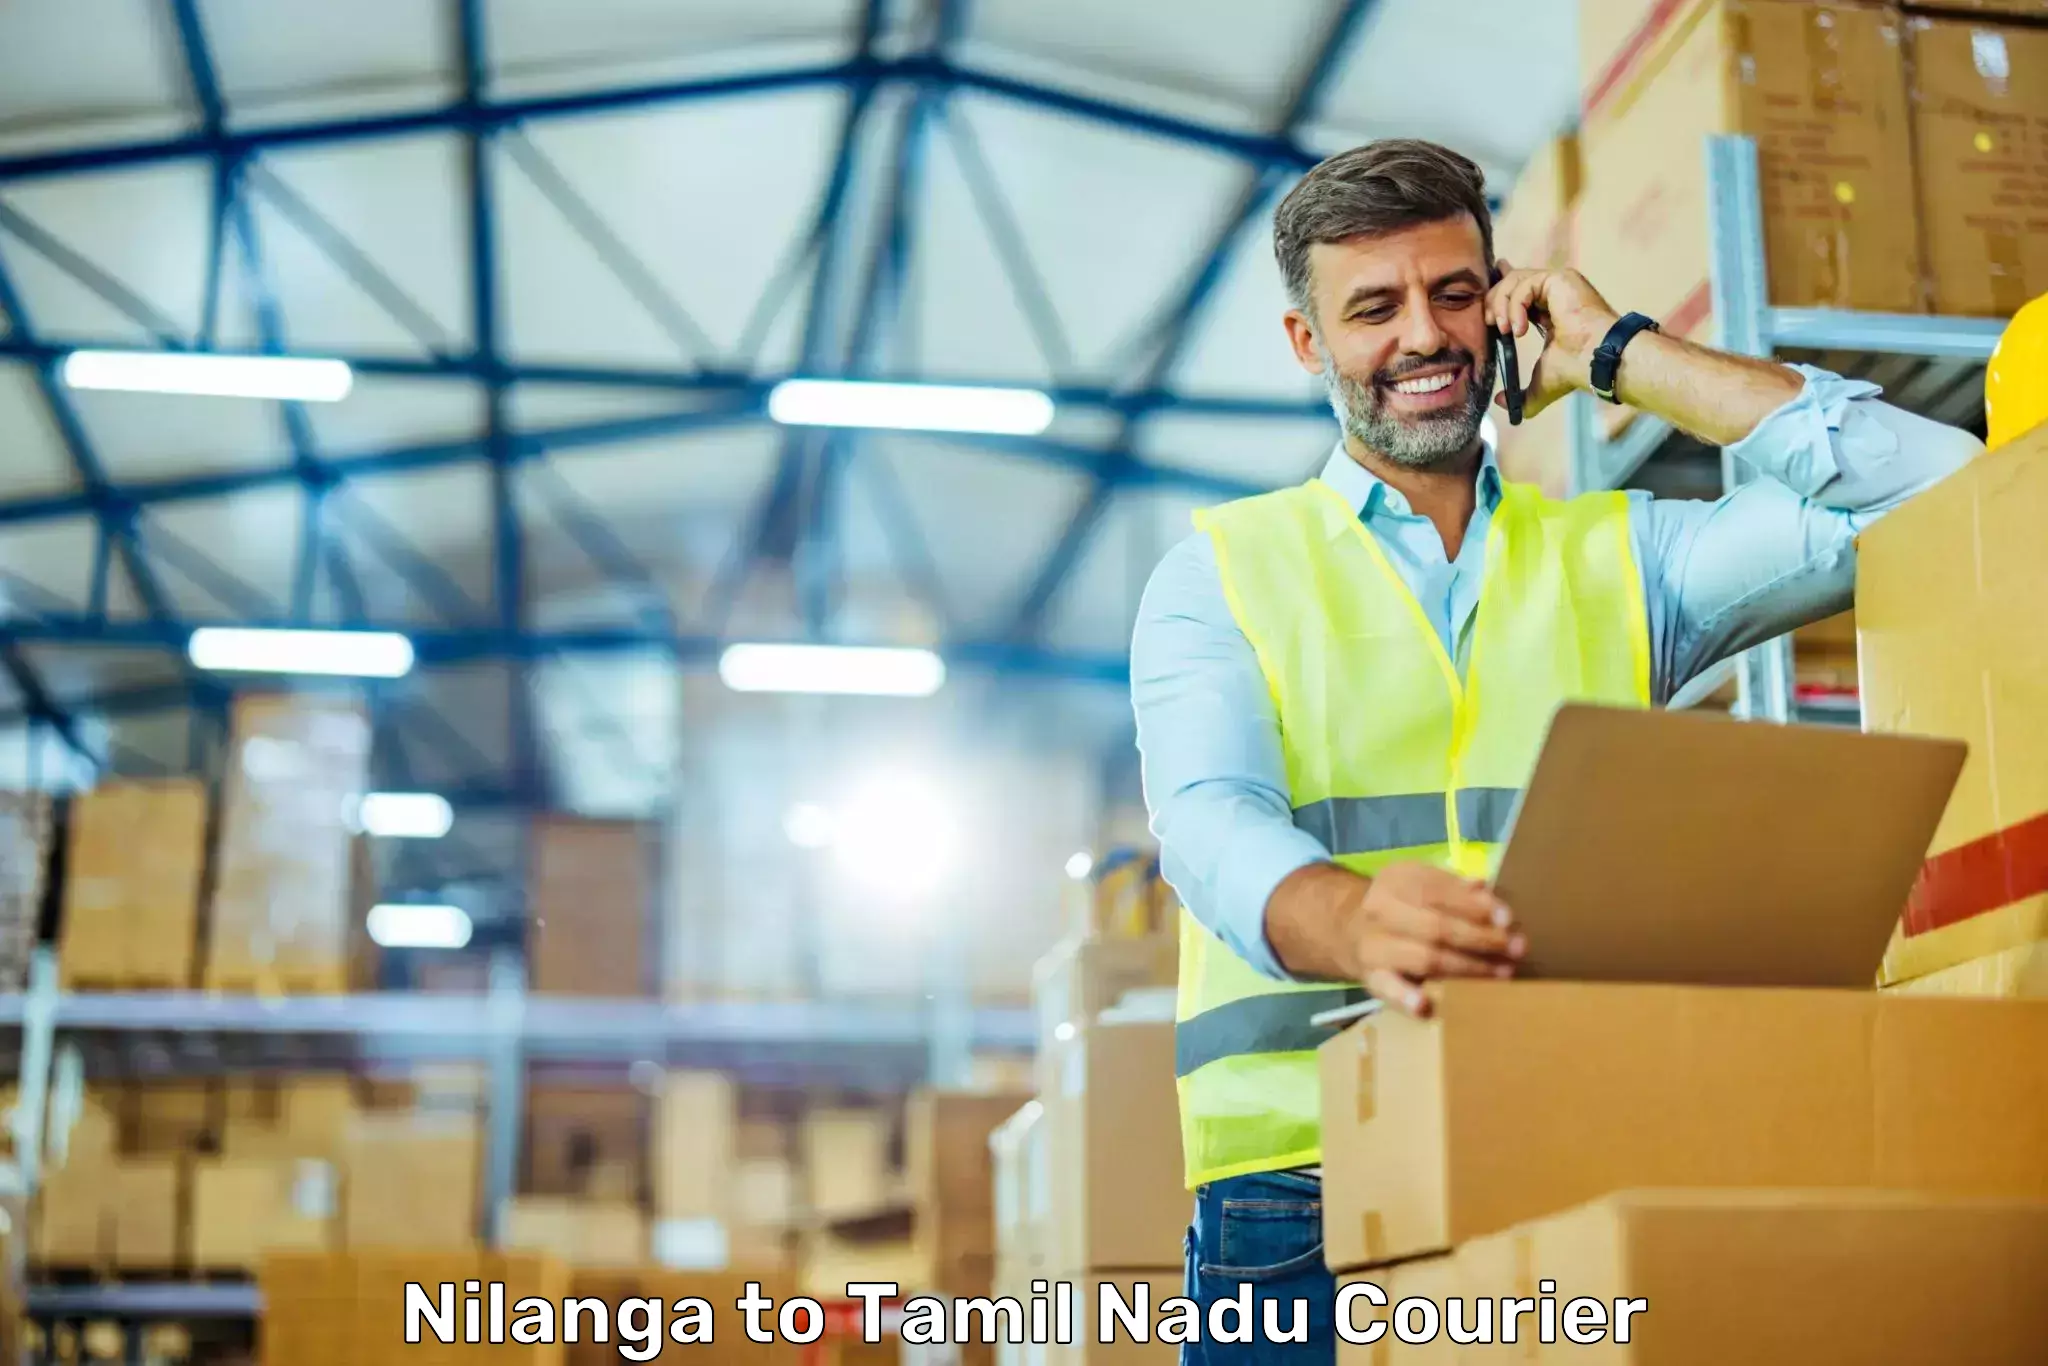 Bulk shipping discounts Nilanga to Perunali